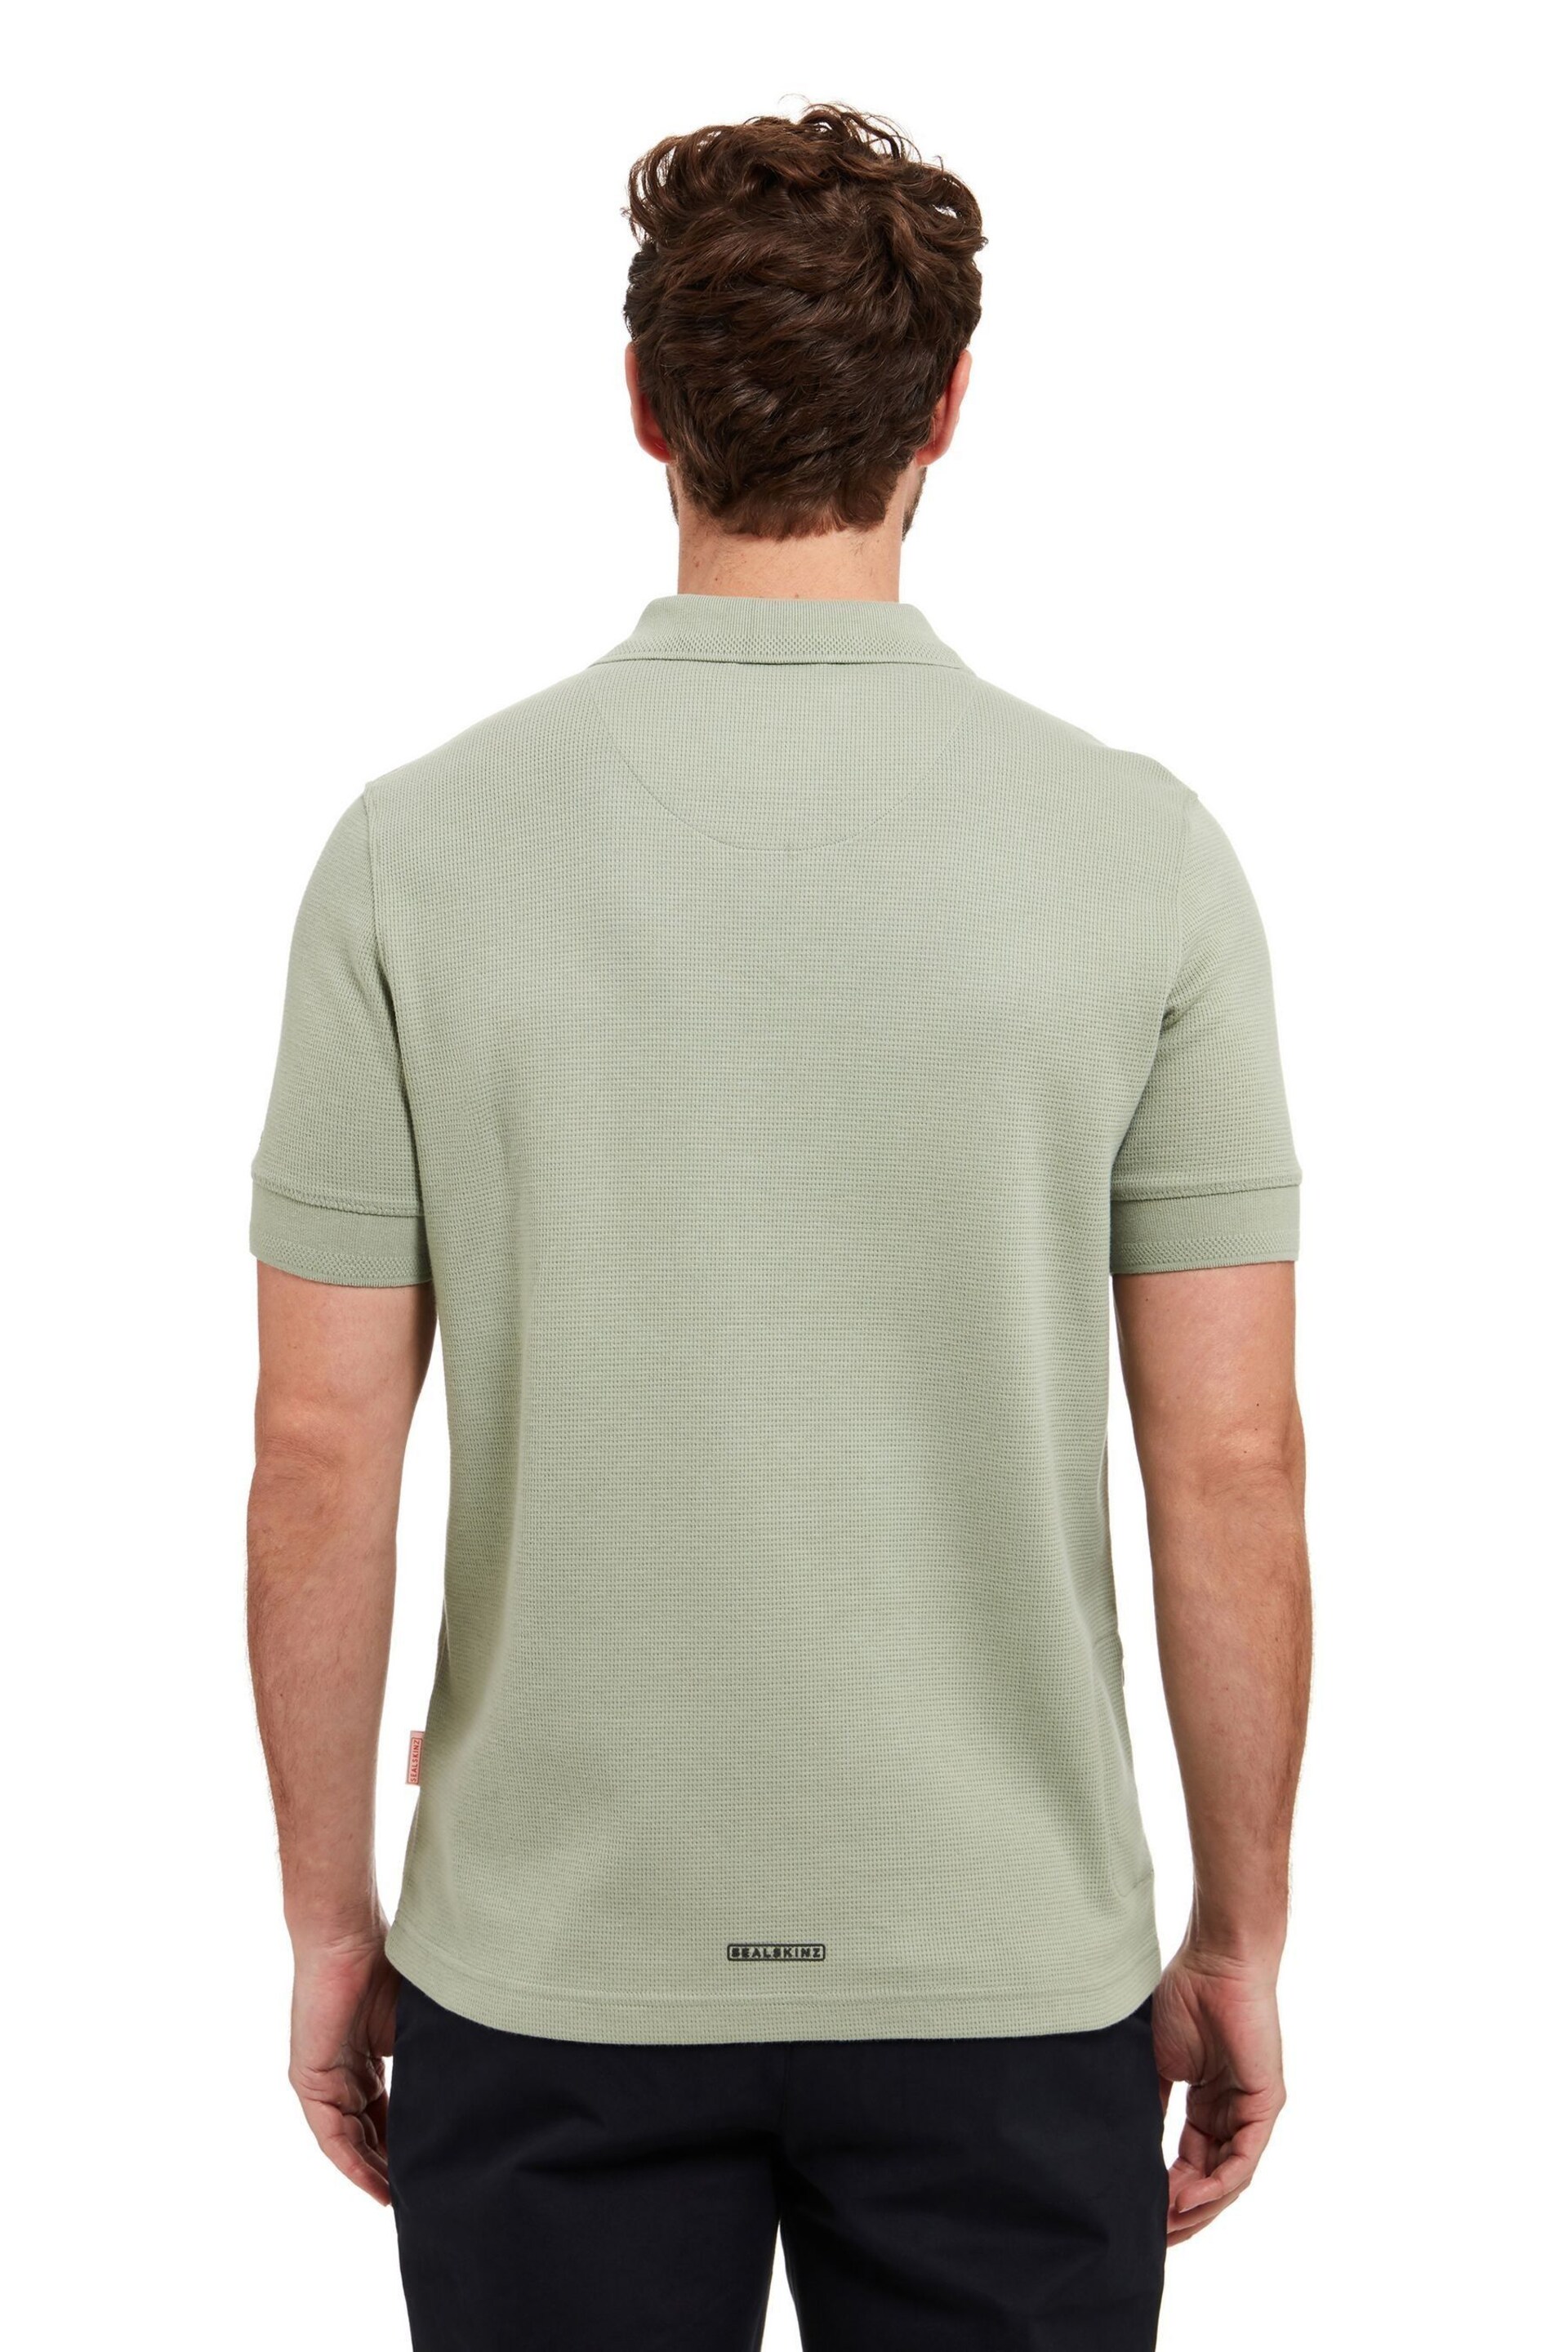 Sealskinz Green Felthorpe Short Sleeve Waffle Polo Shirt - Image 2 of 5